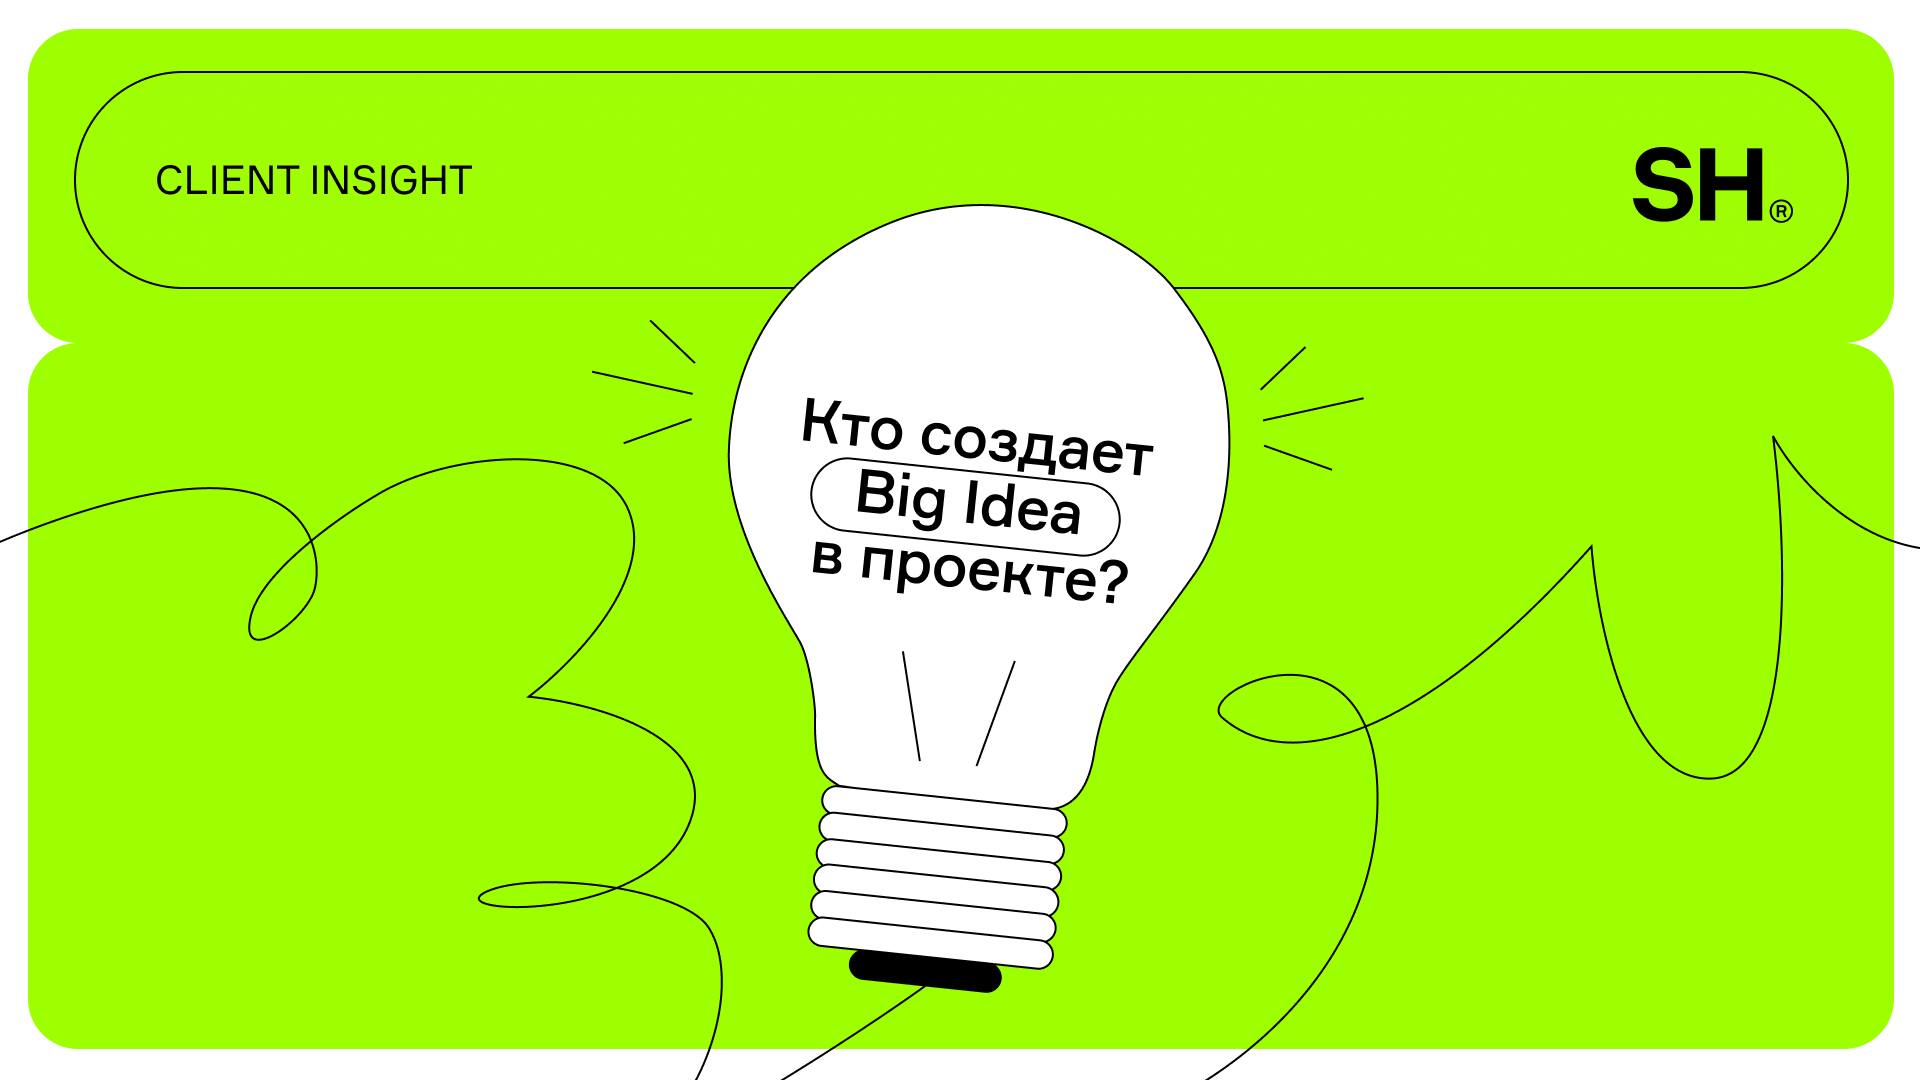 Кто создает Big Idea в проекте?